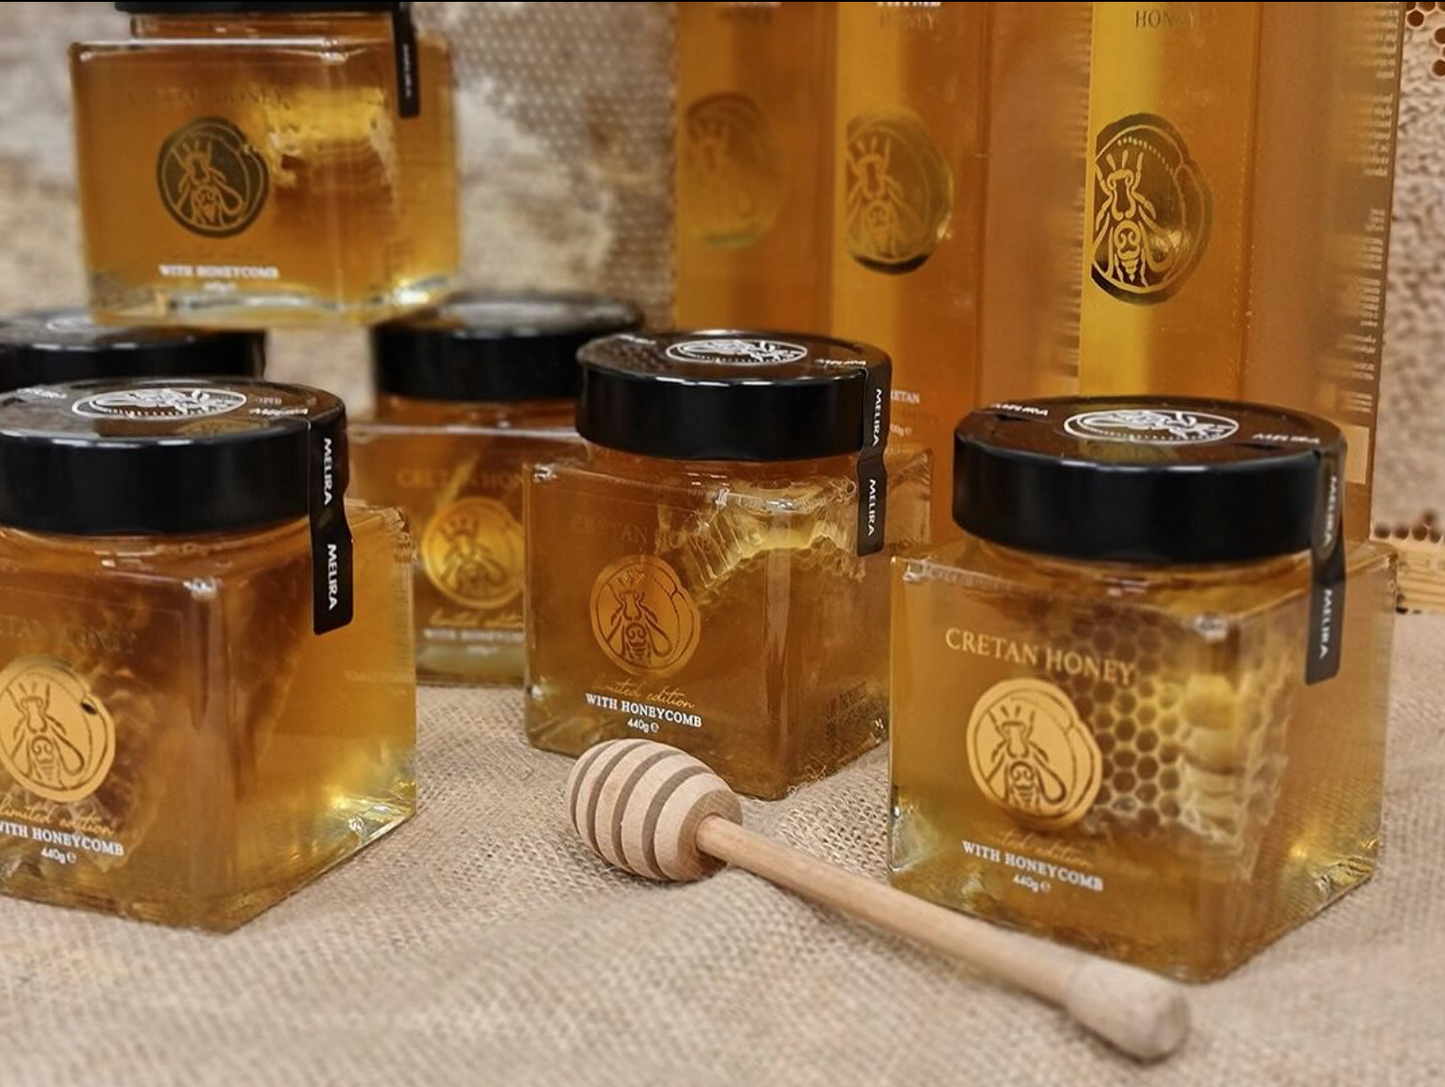 Cretan Honey with Honeycomb 15.5 oz